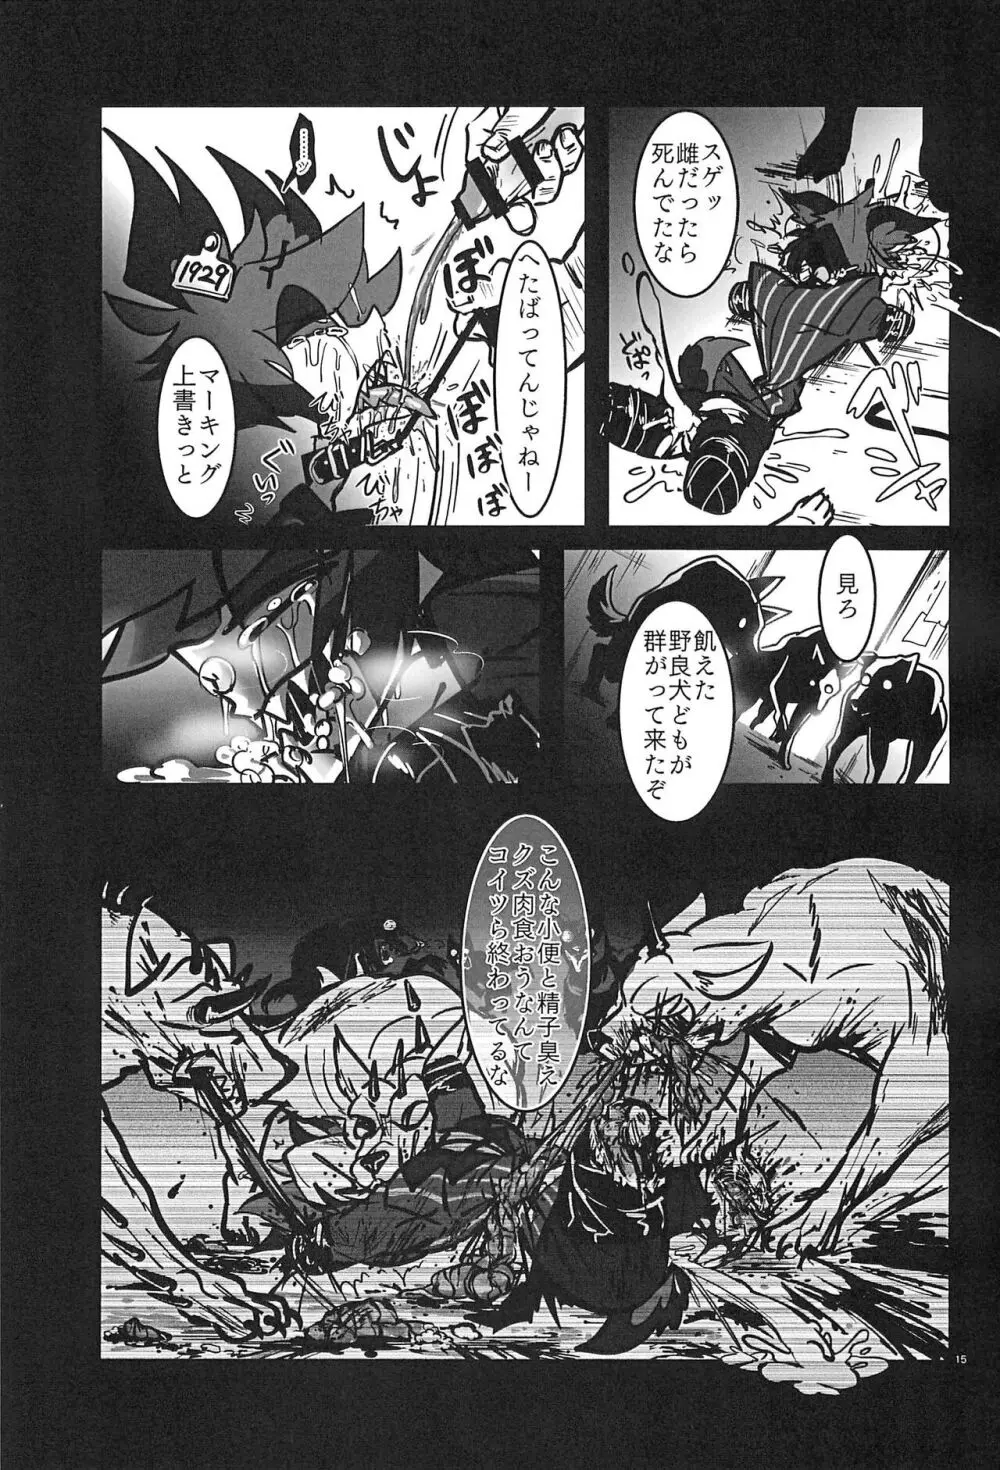 ストロベリーバンビ〜無電悪魔四肢欠損番組〜 - page15